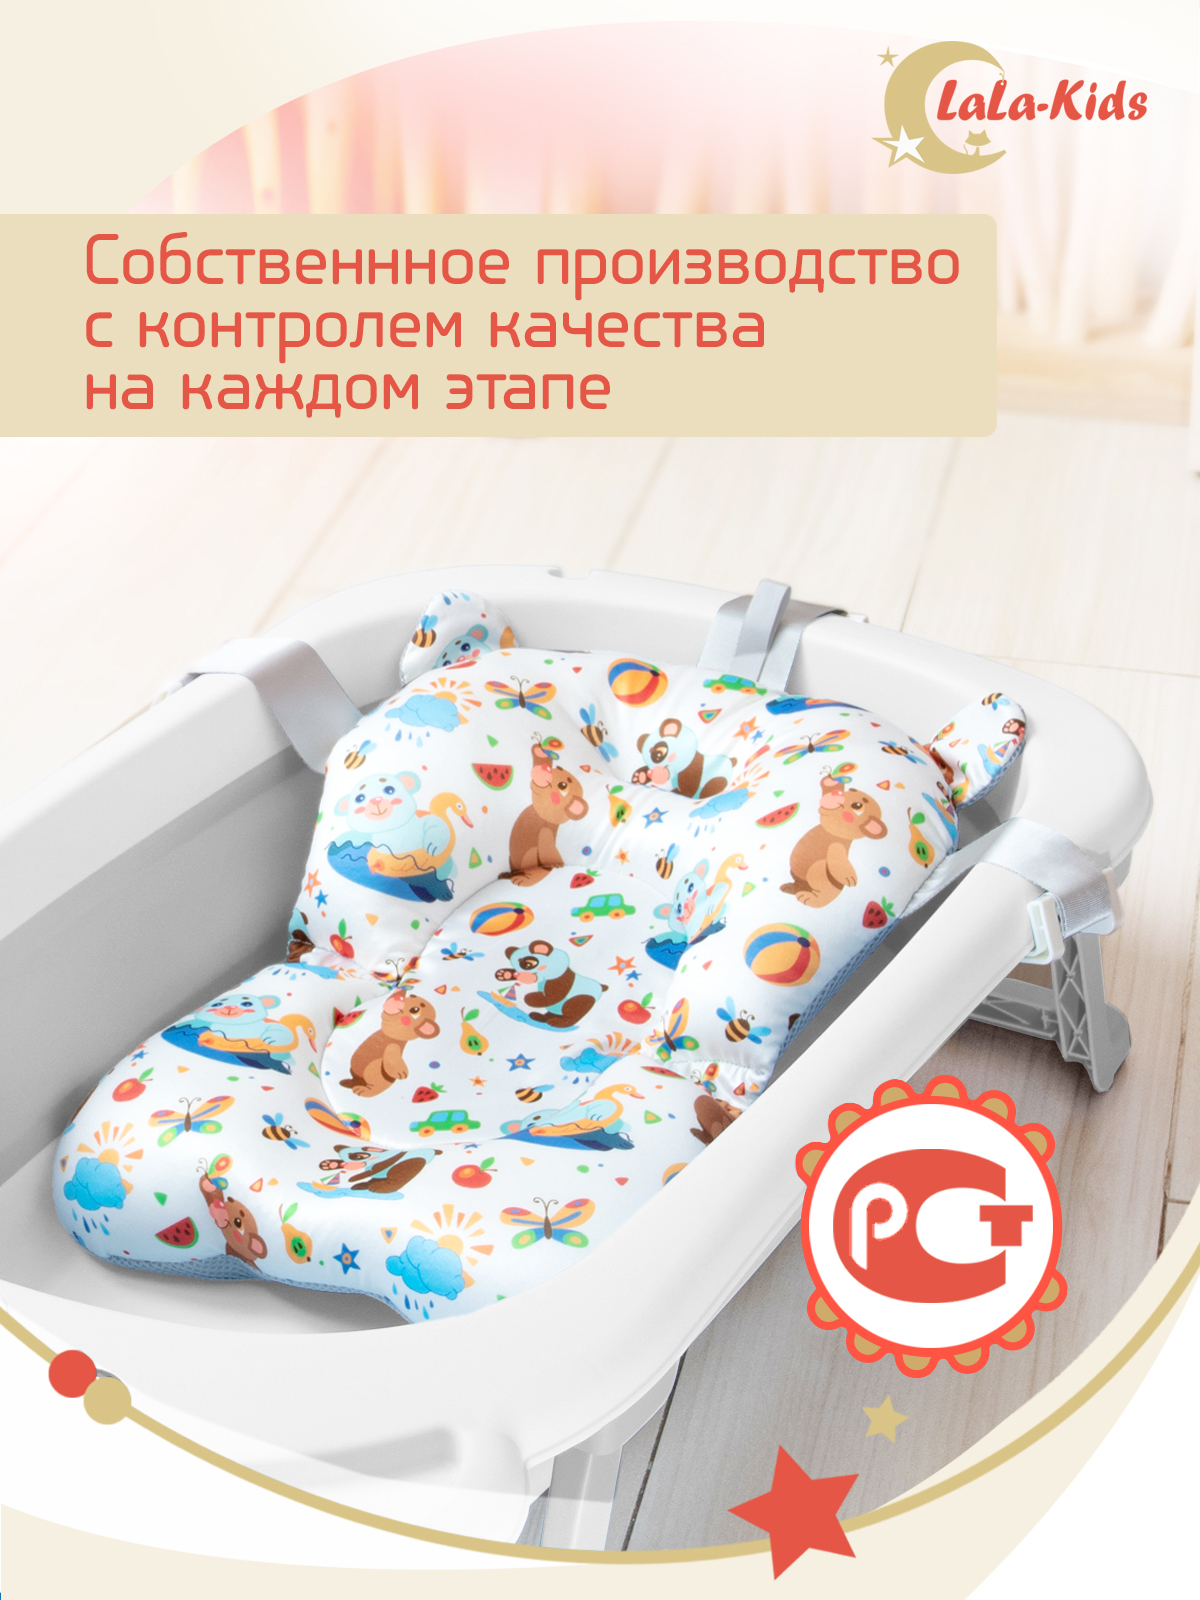 Детская ванночка с термометром LaLa-Kids складная с матрасиком коричневым в комплекте - фото 19